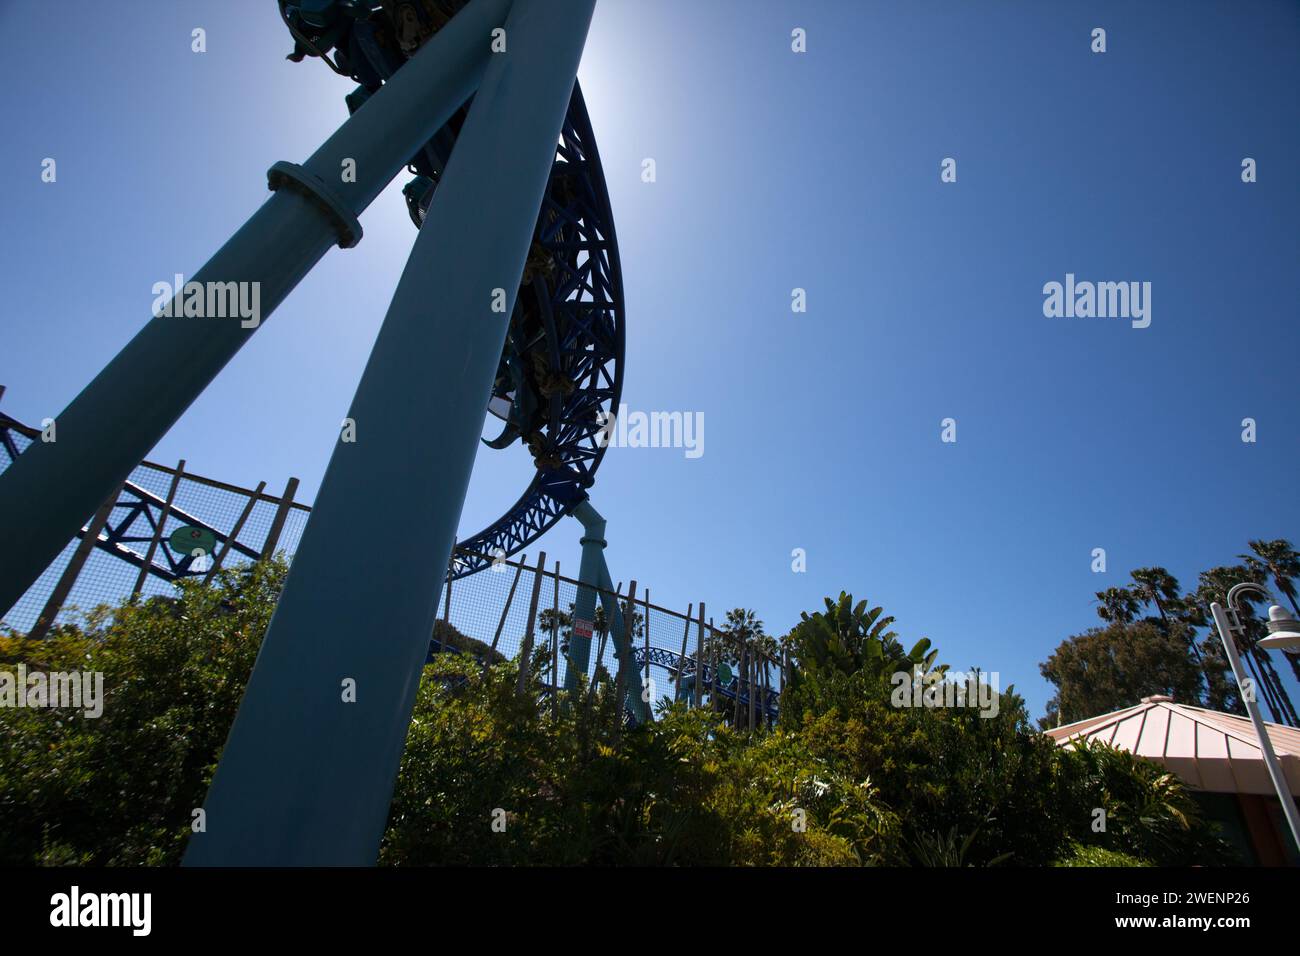 Una montagna russa si capovolge in alto contro un cielo blu in un parco a tema Foto Stock